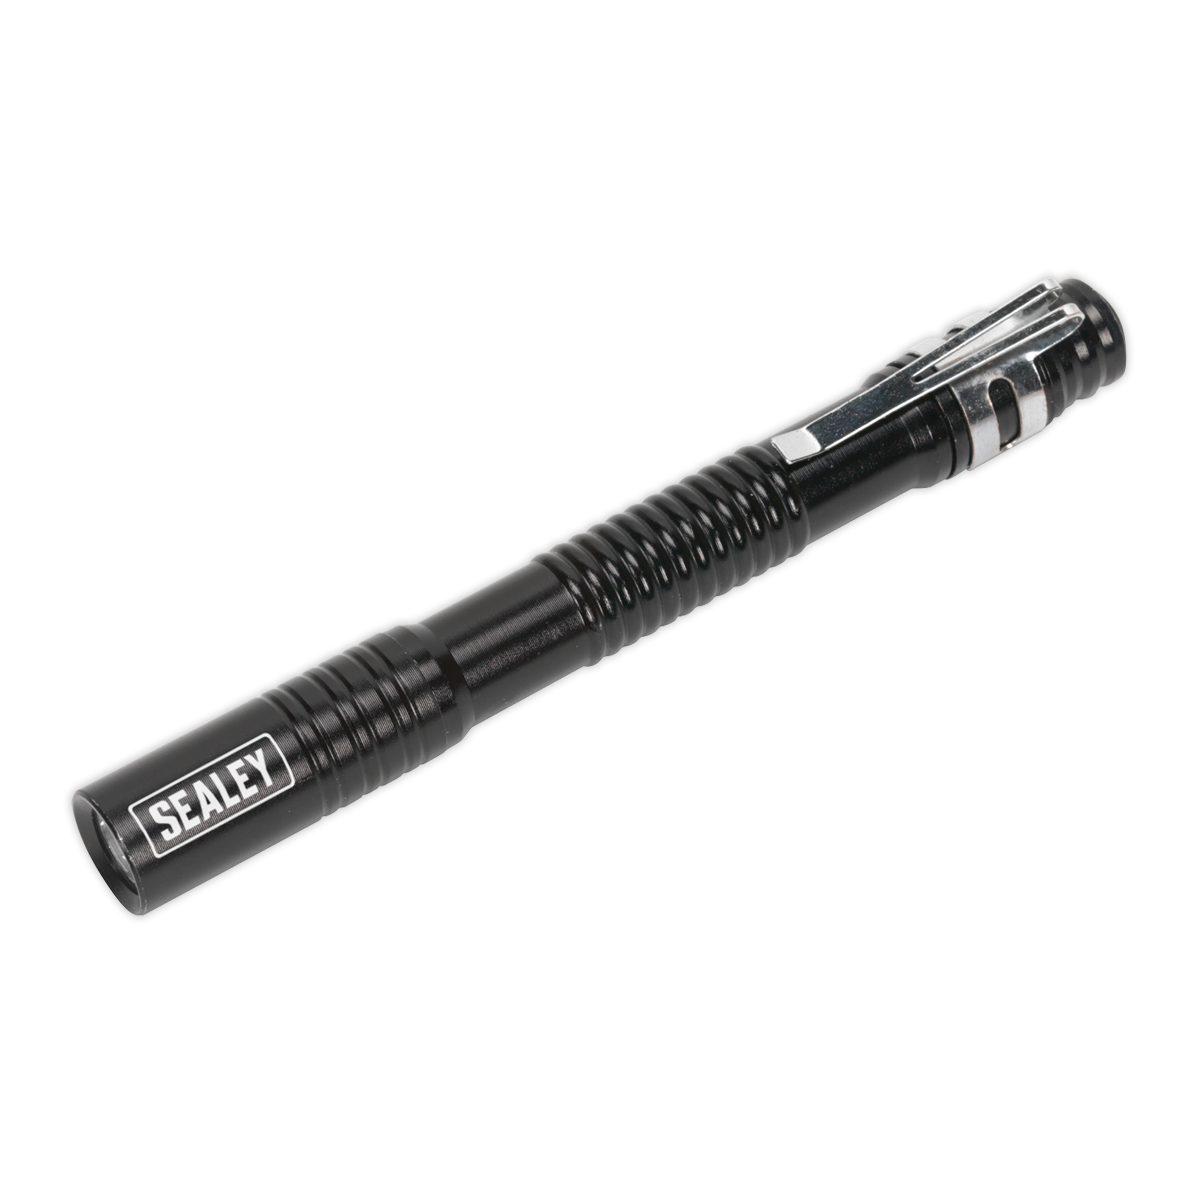 Sealey Aluminium Penlight 0.5W LED 2 x AAA Cell